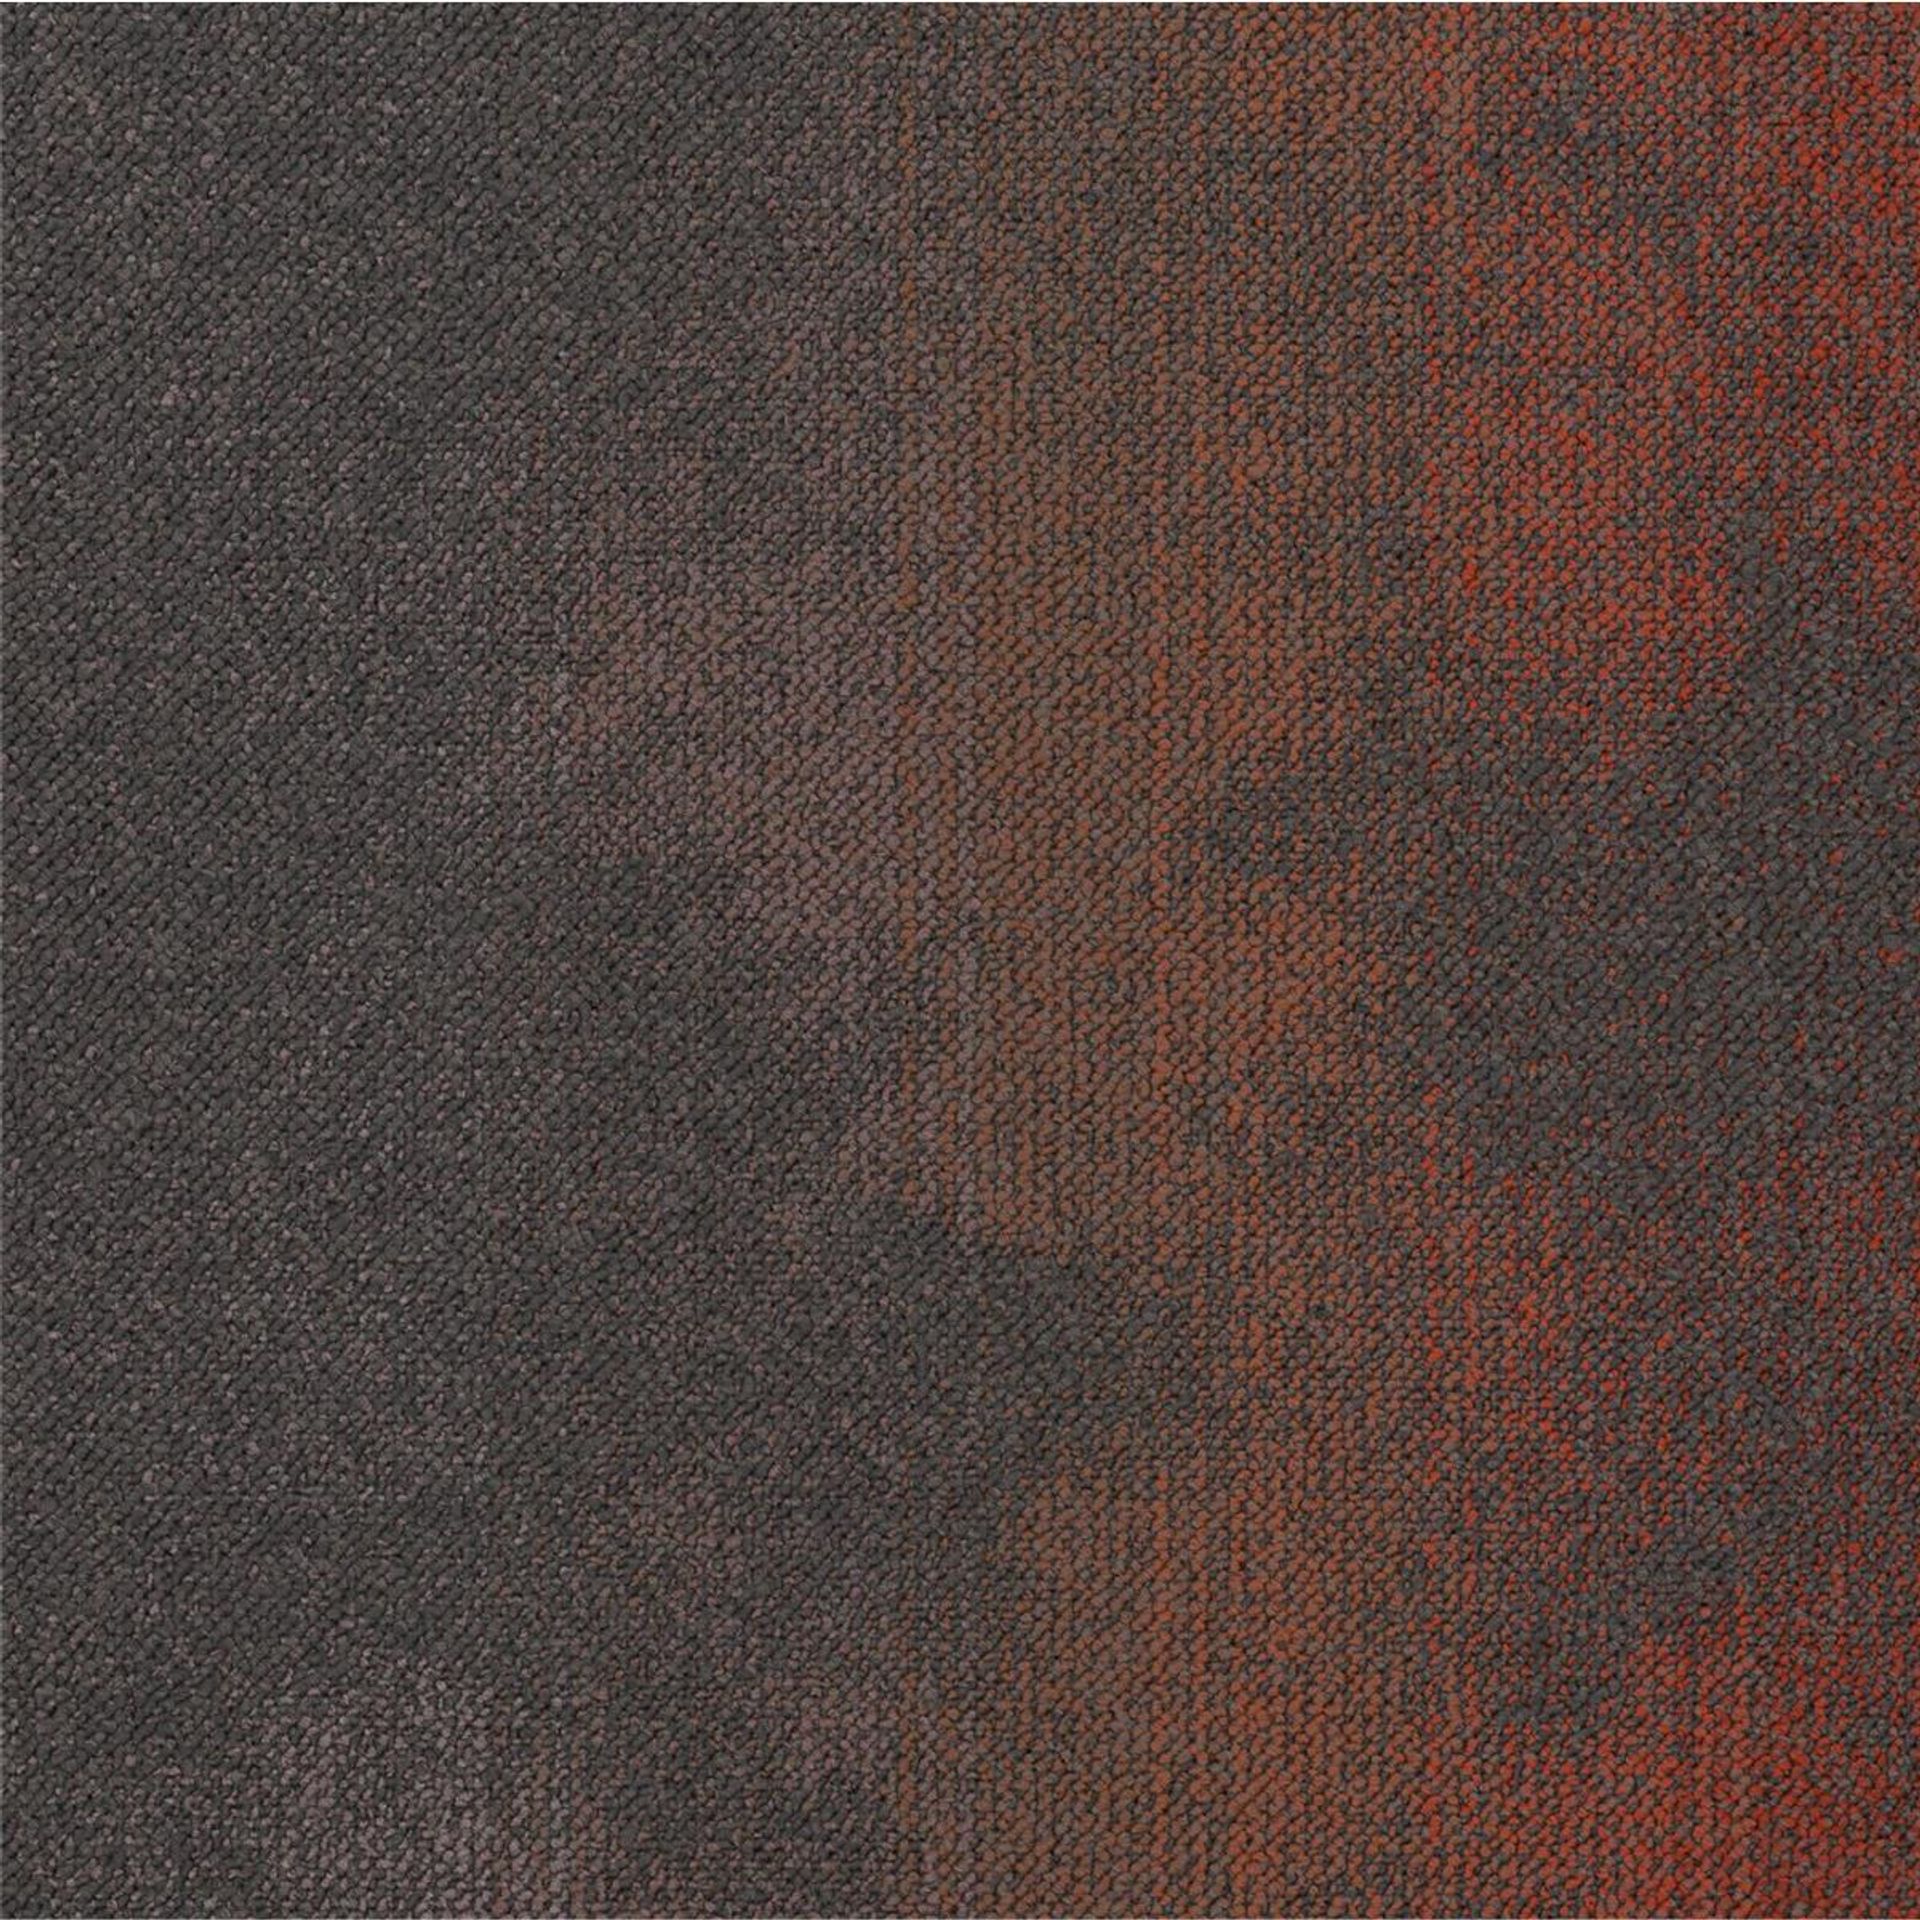 Teppichfliesen 50 x 50 cm Schlinge strukturiert Sere Colour AB94 2087 B8 Rot Organisch